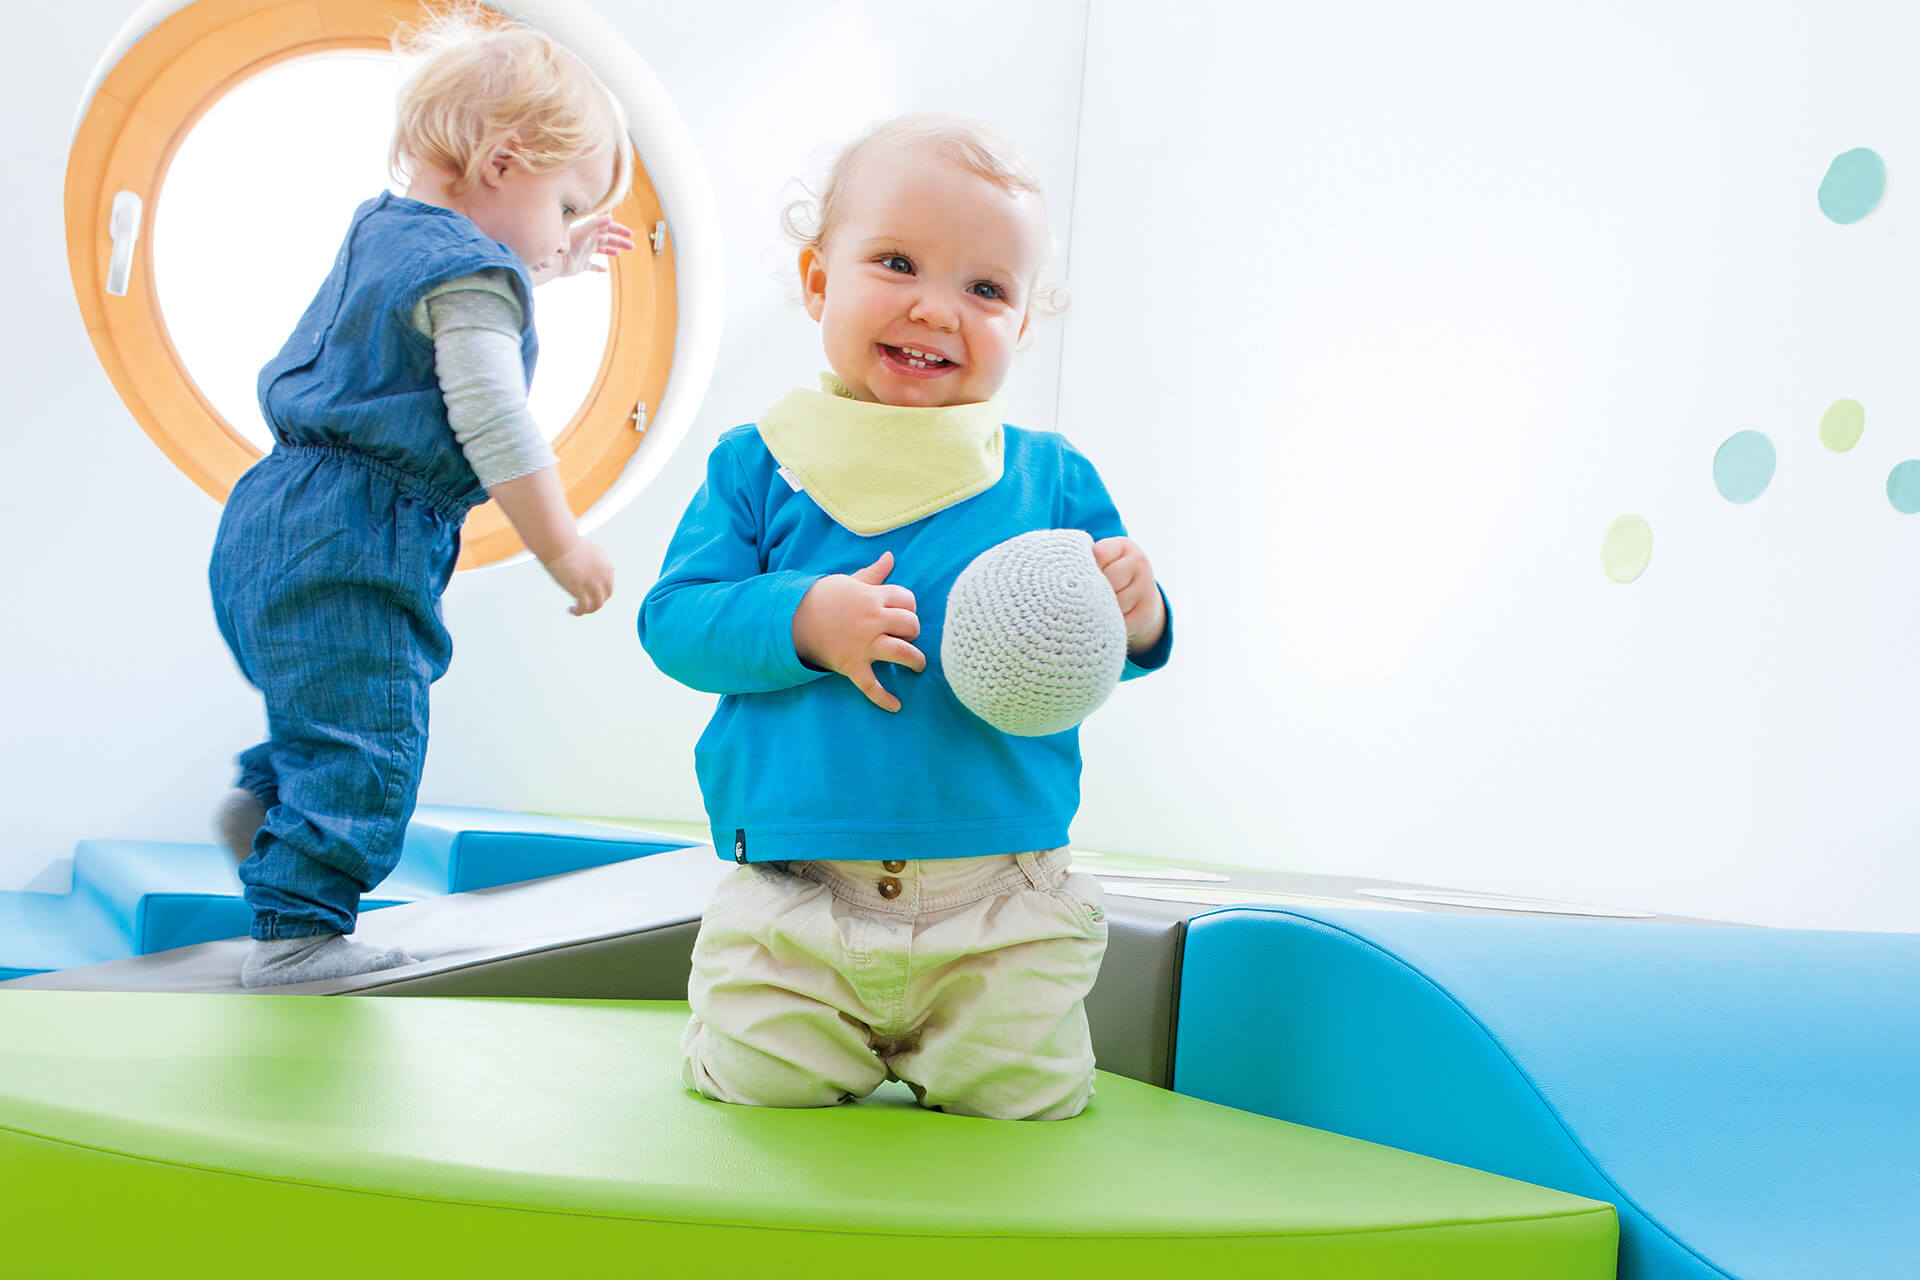 Education | Krippe | 2 | Image | Spielen & Bewegung | kleines Kind hat einen Schaumstoffball in der Hand und kniet auf einem grünen Schaumstoffpodest